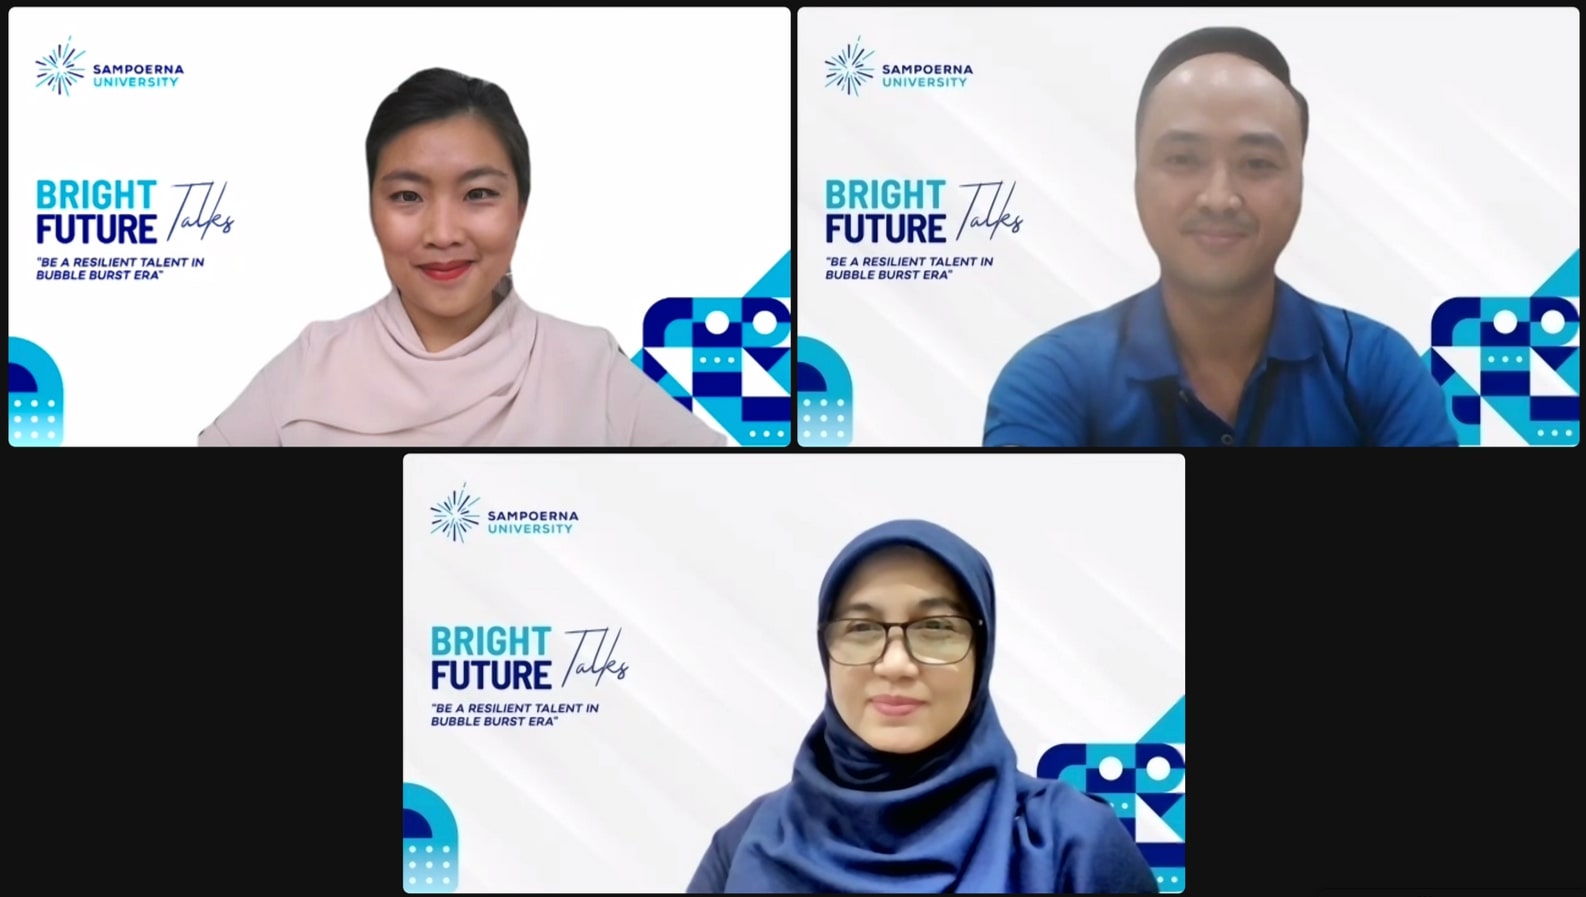 Bincang Bright Future Talks (Sumber gambar: Dok. Sampoerna University)